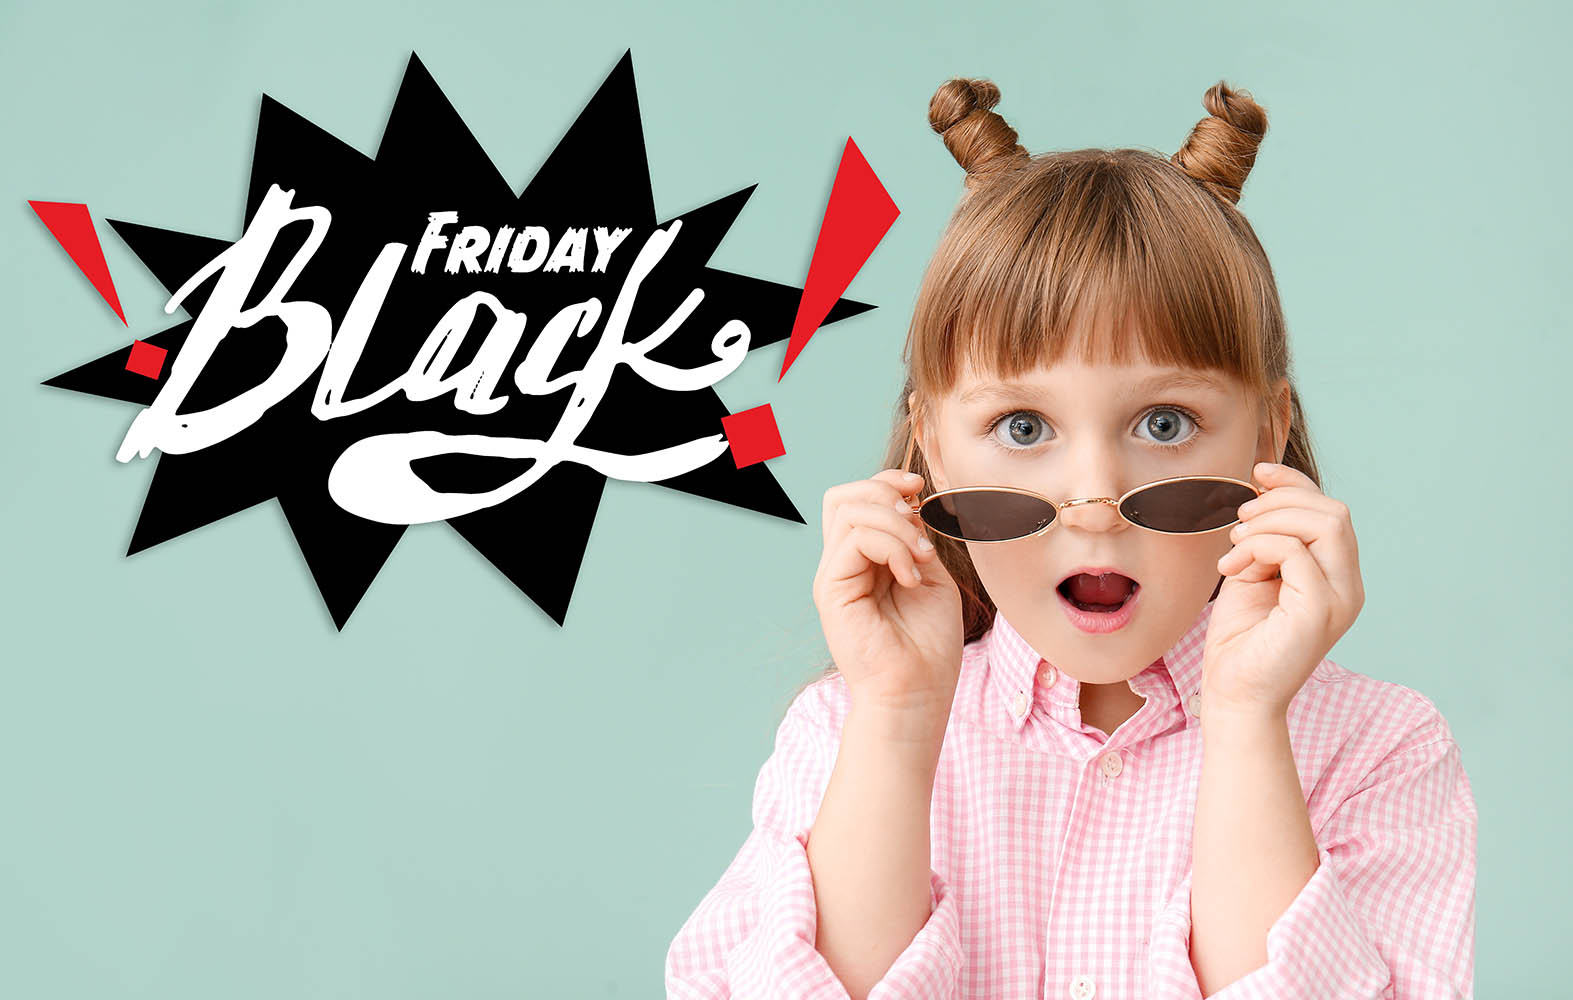 Τι χρειάζεται να προσέχει ένα παιδί όταν ψωνίζει τη Black Friday;